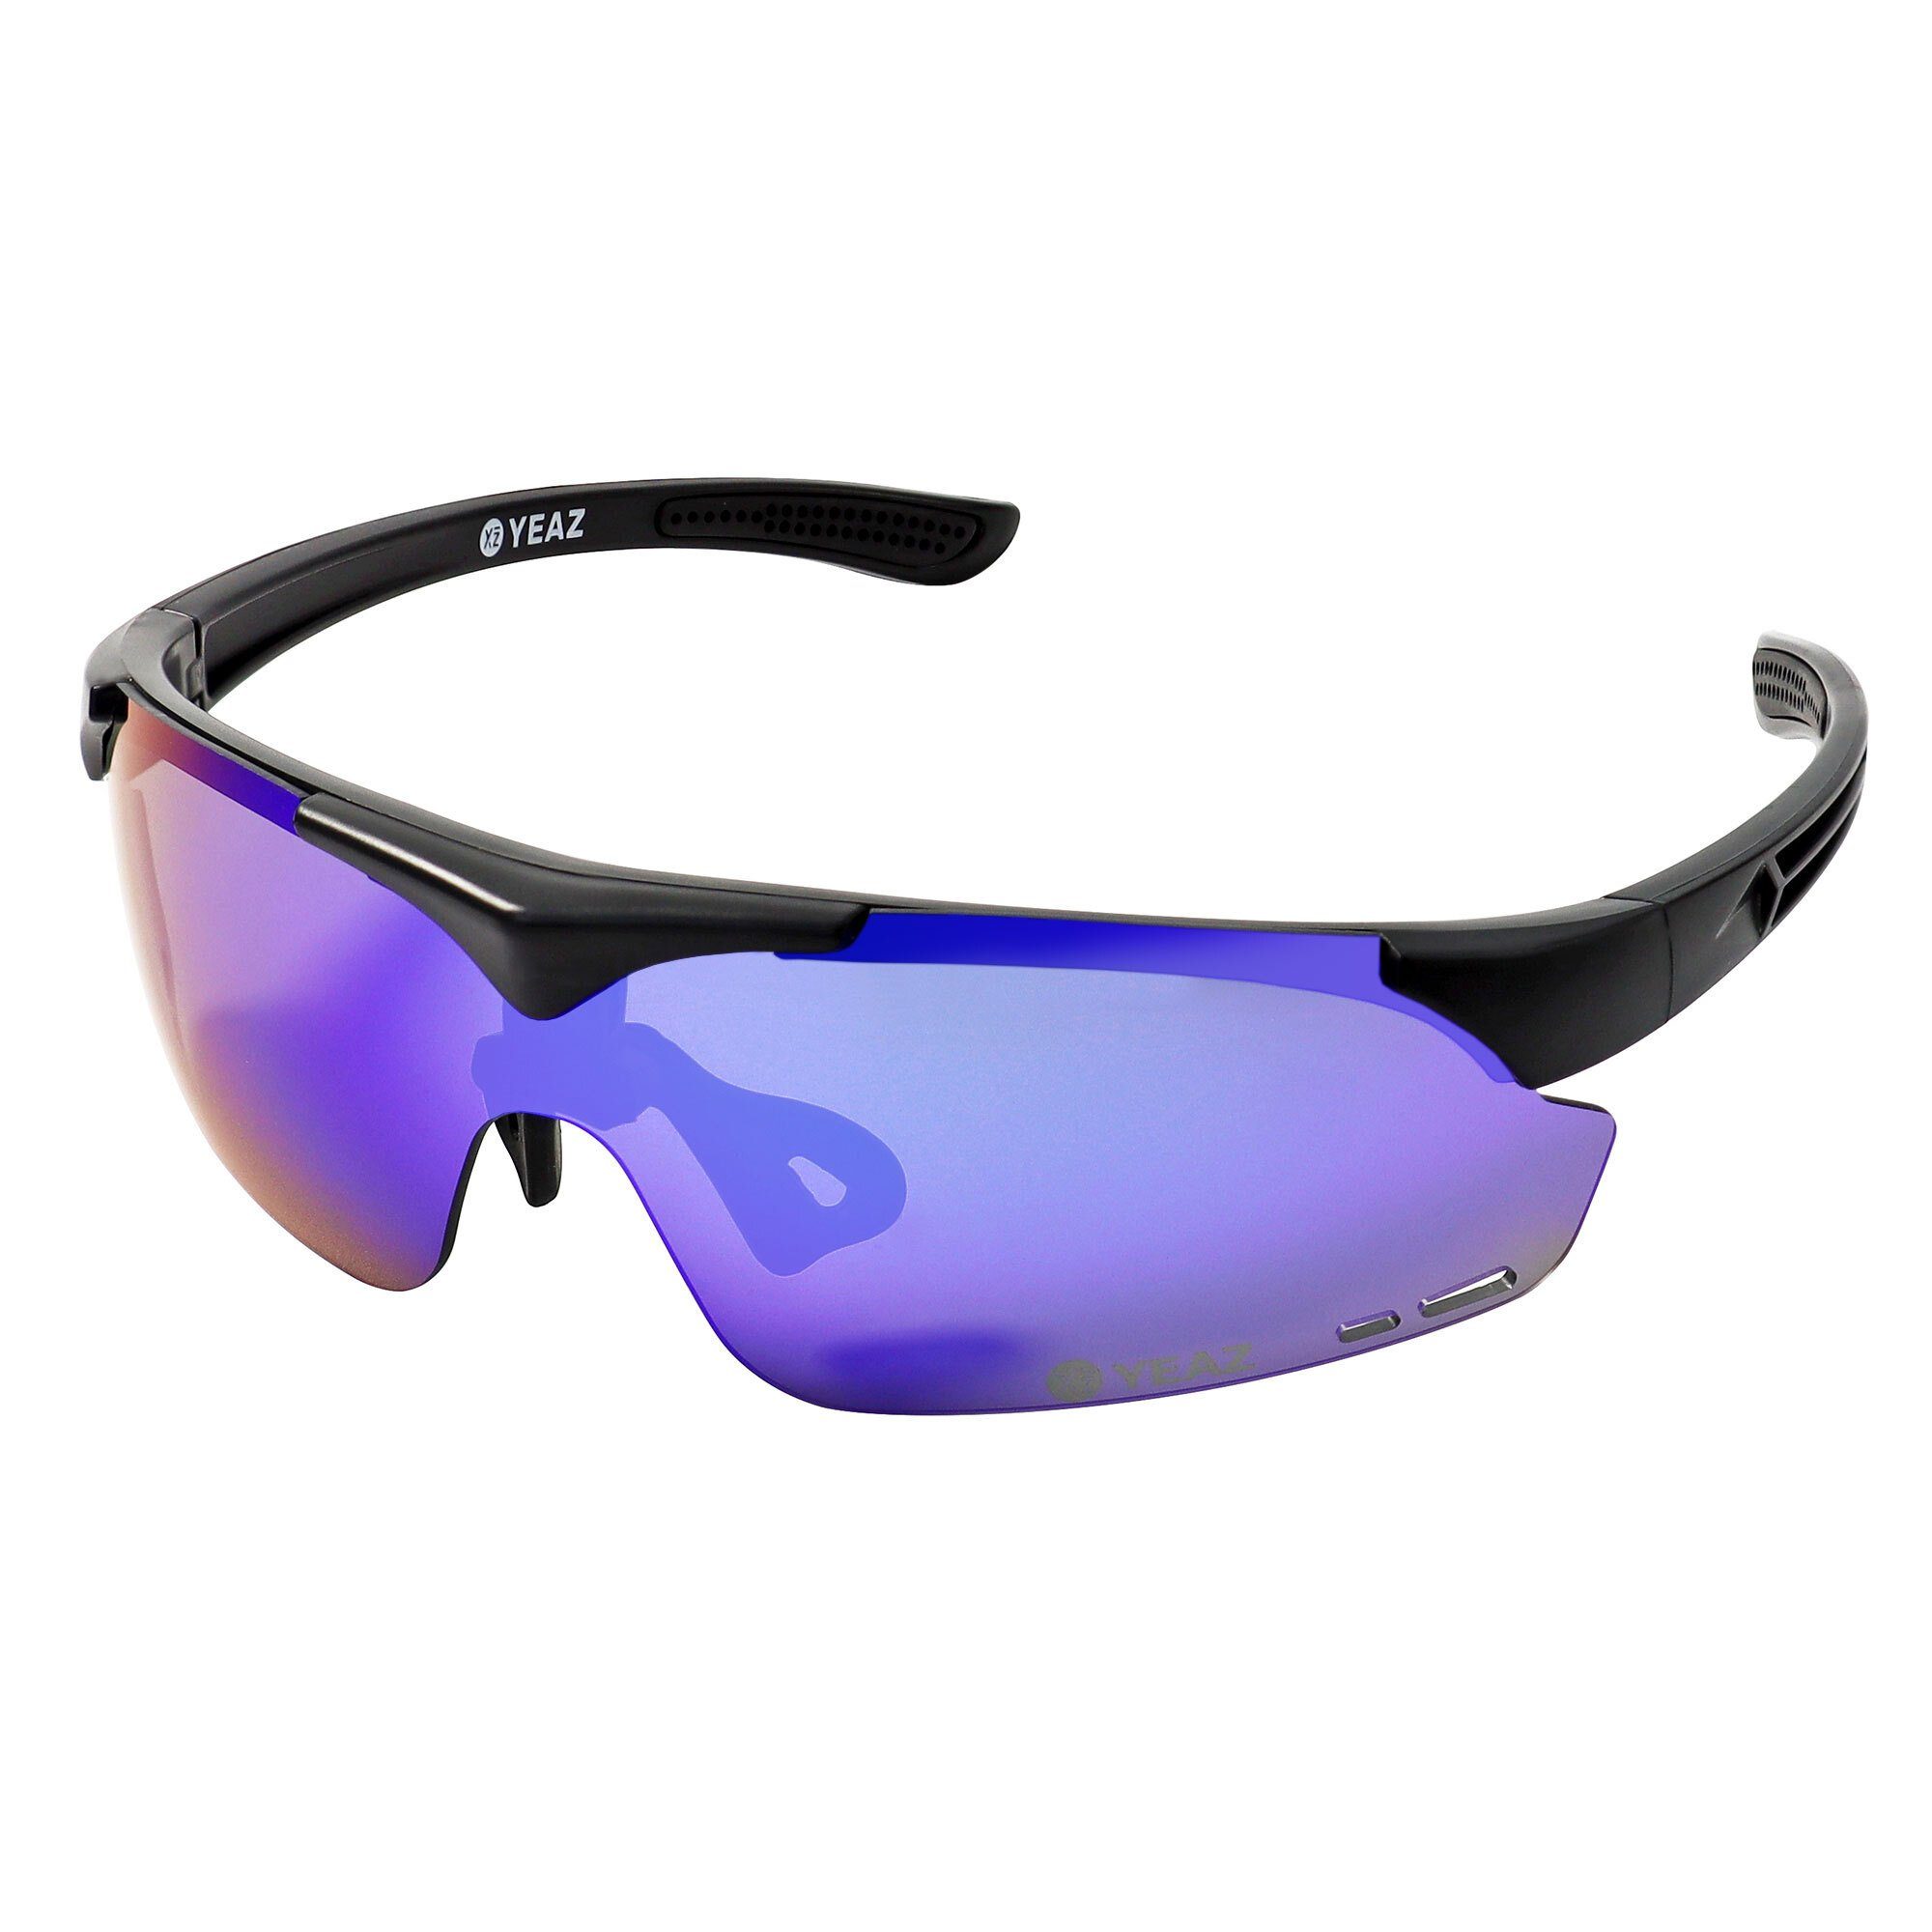 YEAZ Sportbrille SUNUP mit magnet-sport-sonnenbrille, Magnetsystem Sport-Sonnenbrille